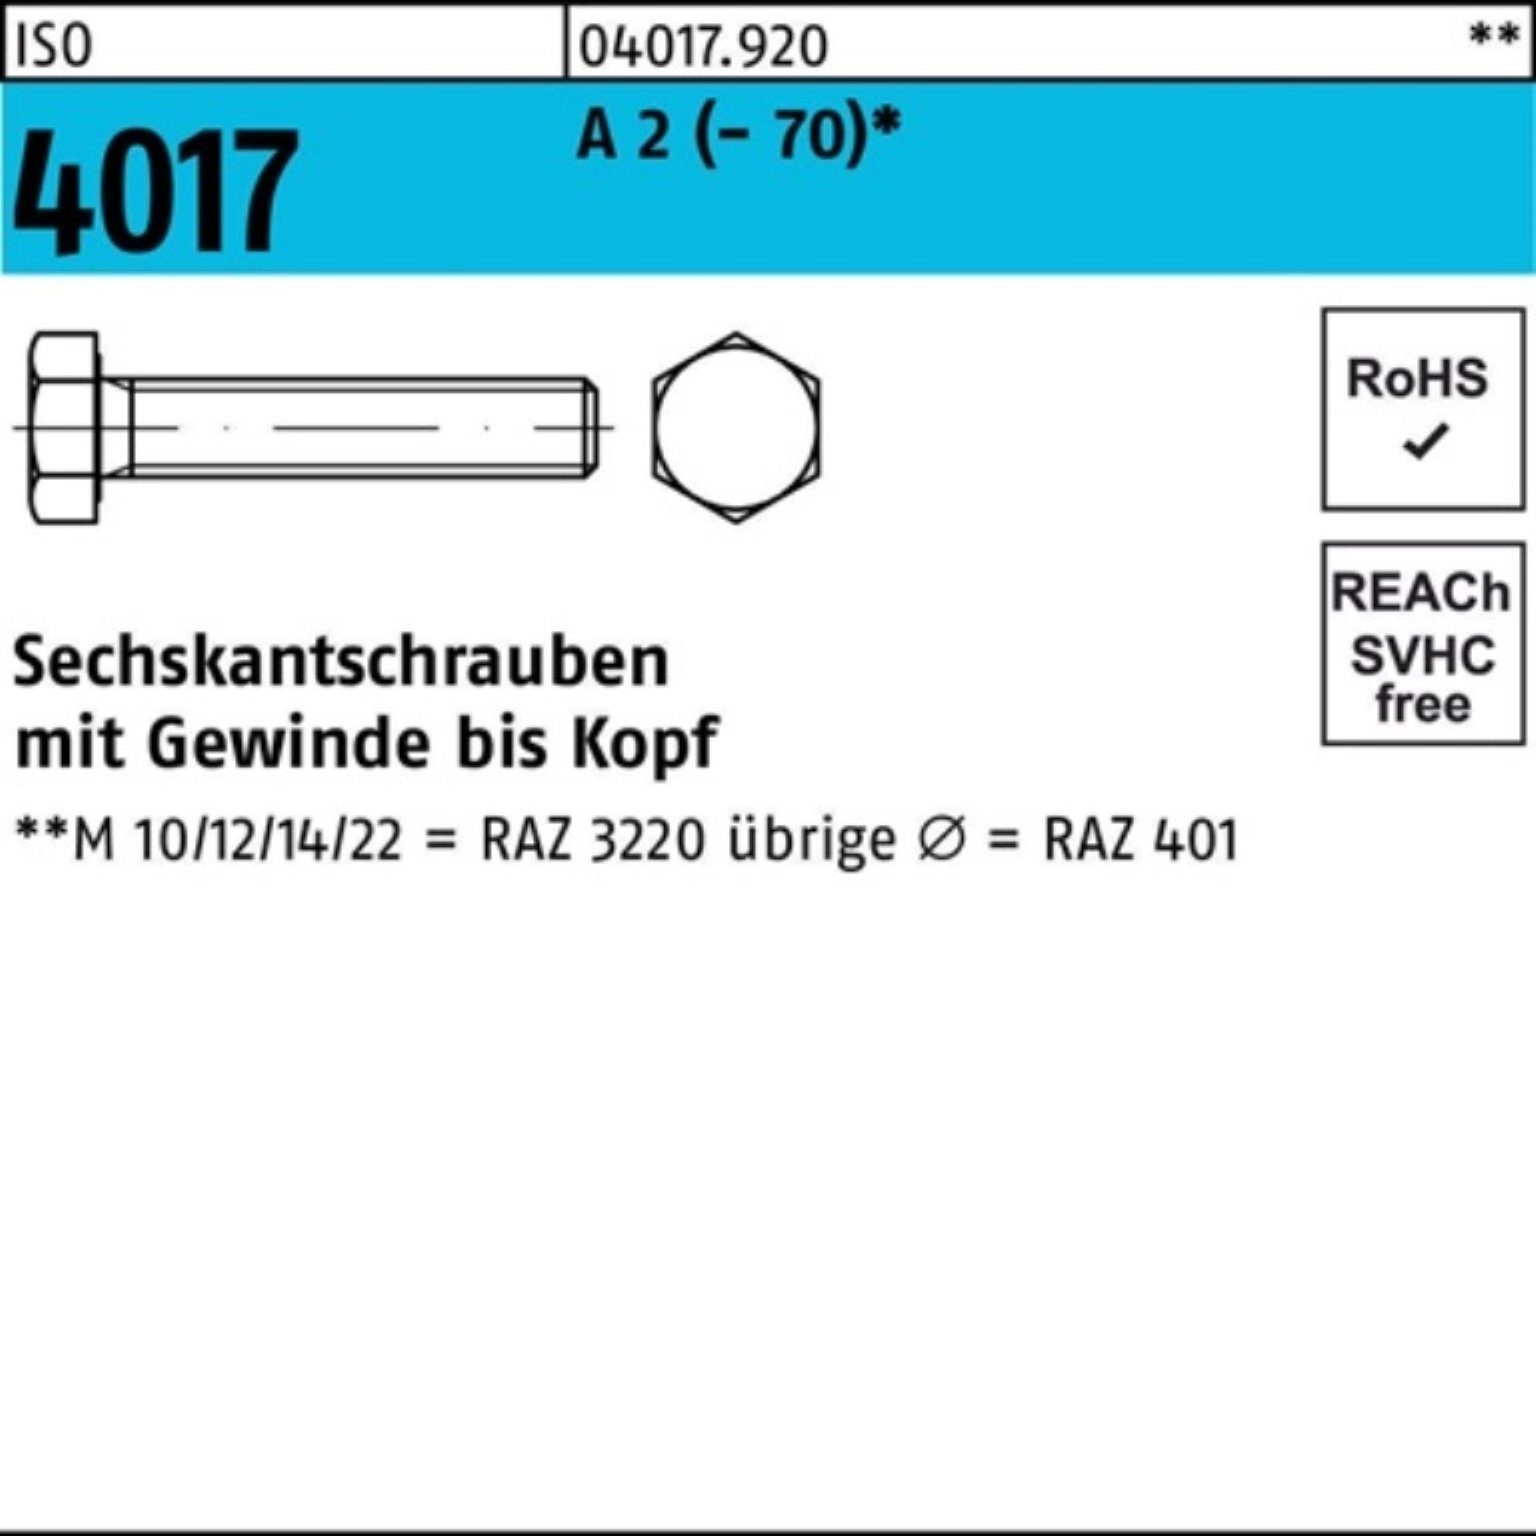 Bufab Sechskantschraube 100er 2 (70) Sechskantschraube M10x 100 Stück ISO A Pack VG 4017 65